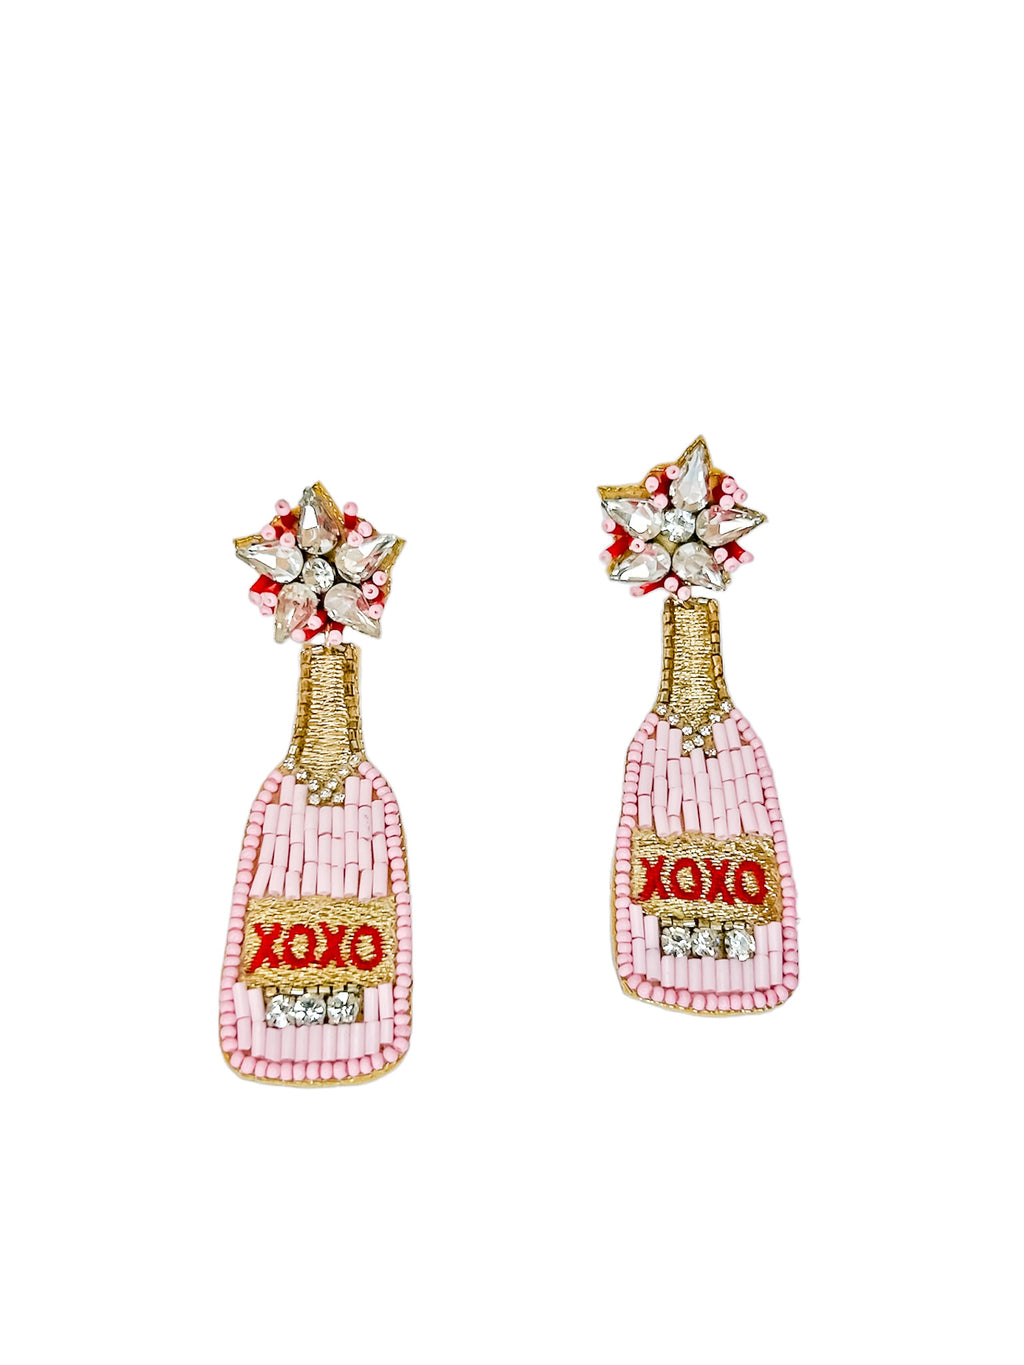 XOXO Champagne Bottle Earrings